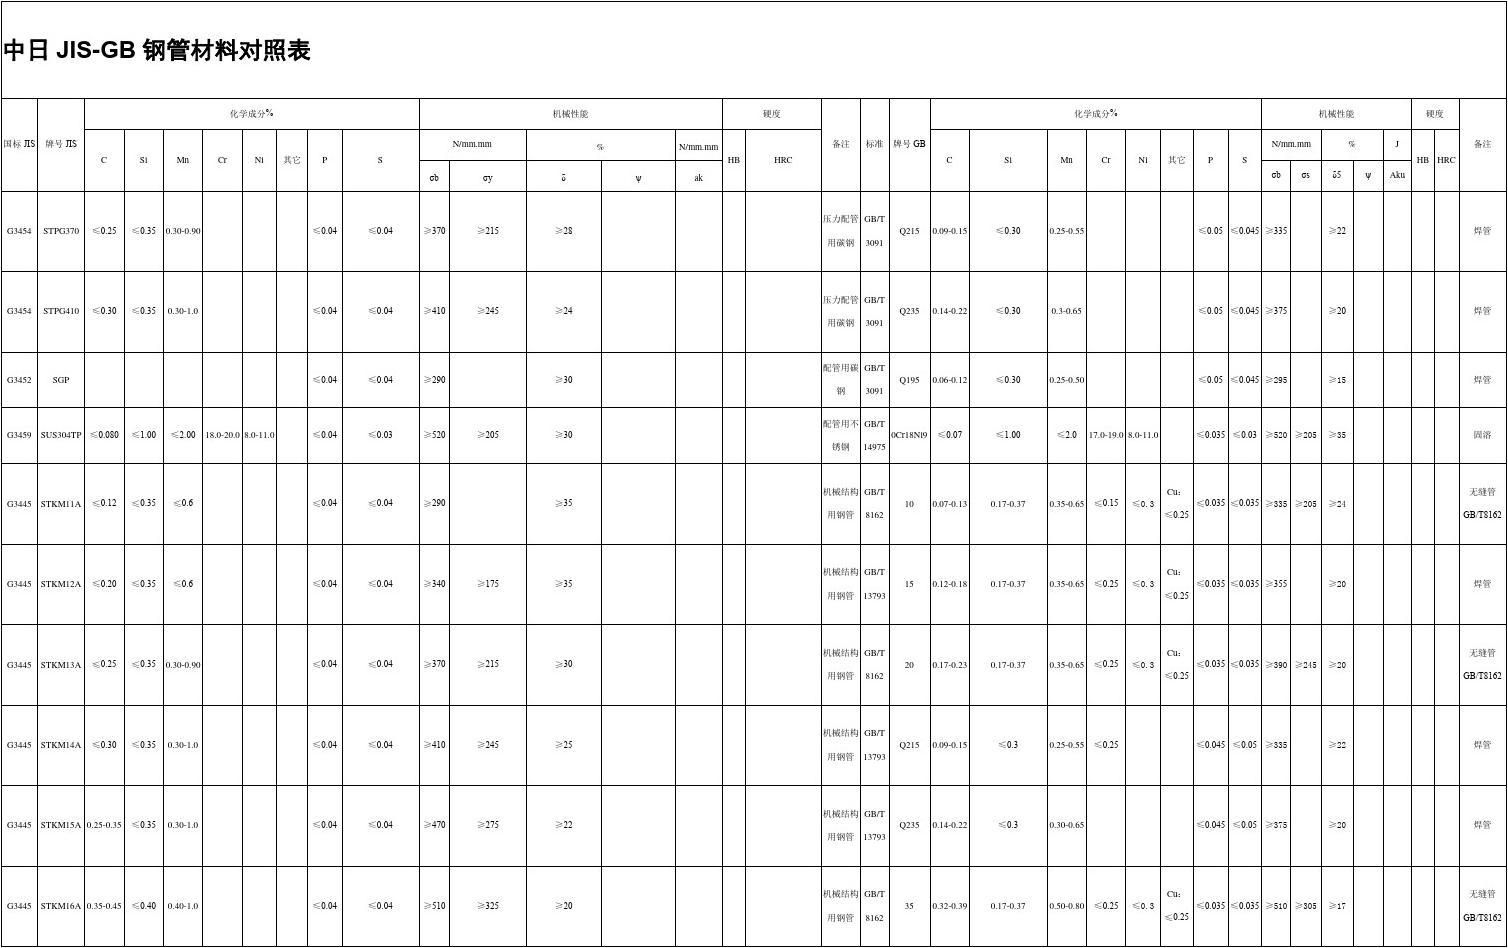 中日JIS-GB钢管材料对照表